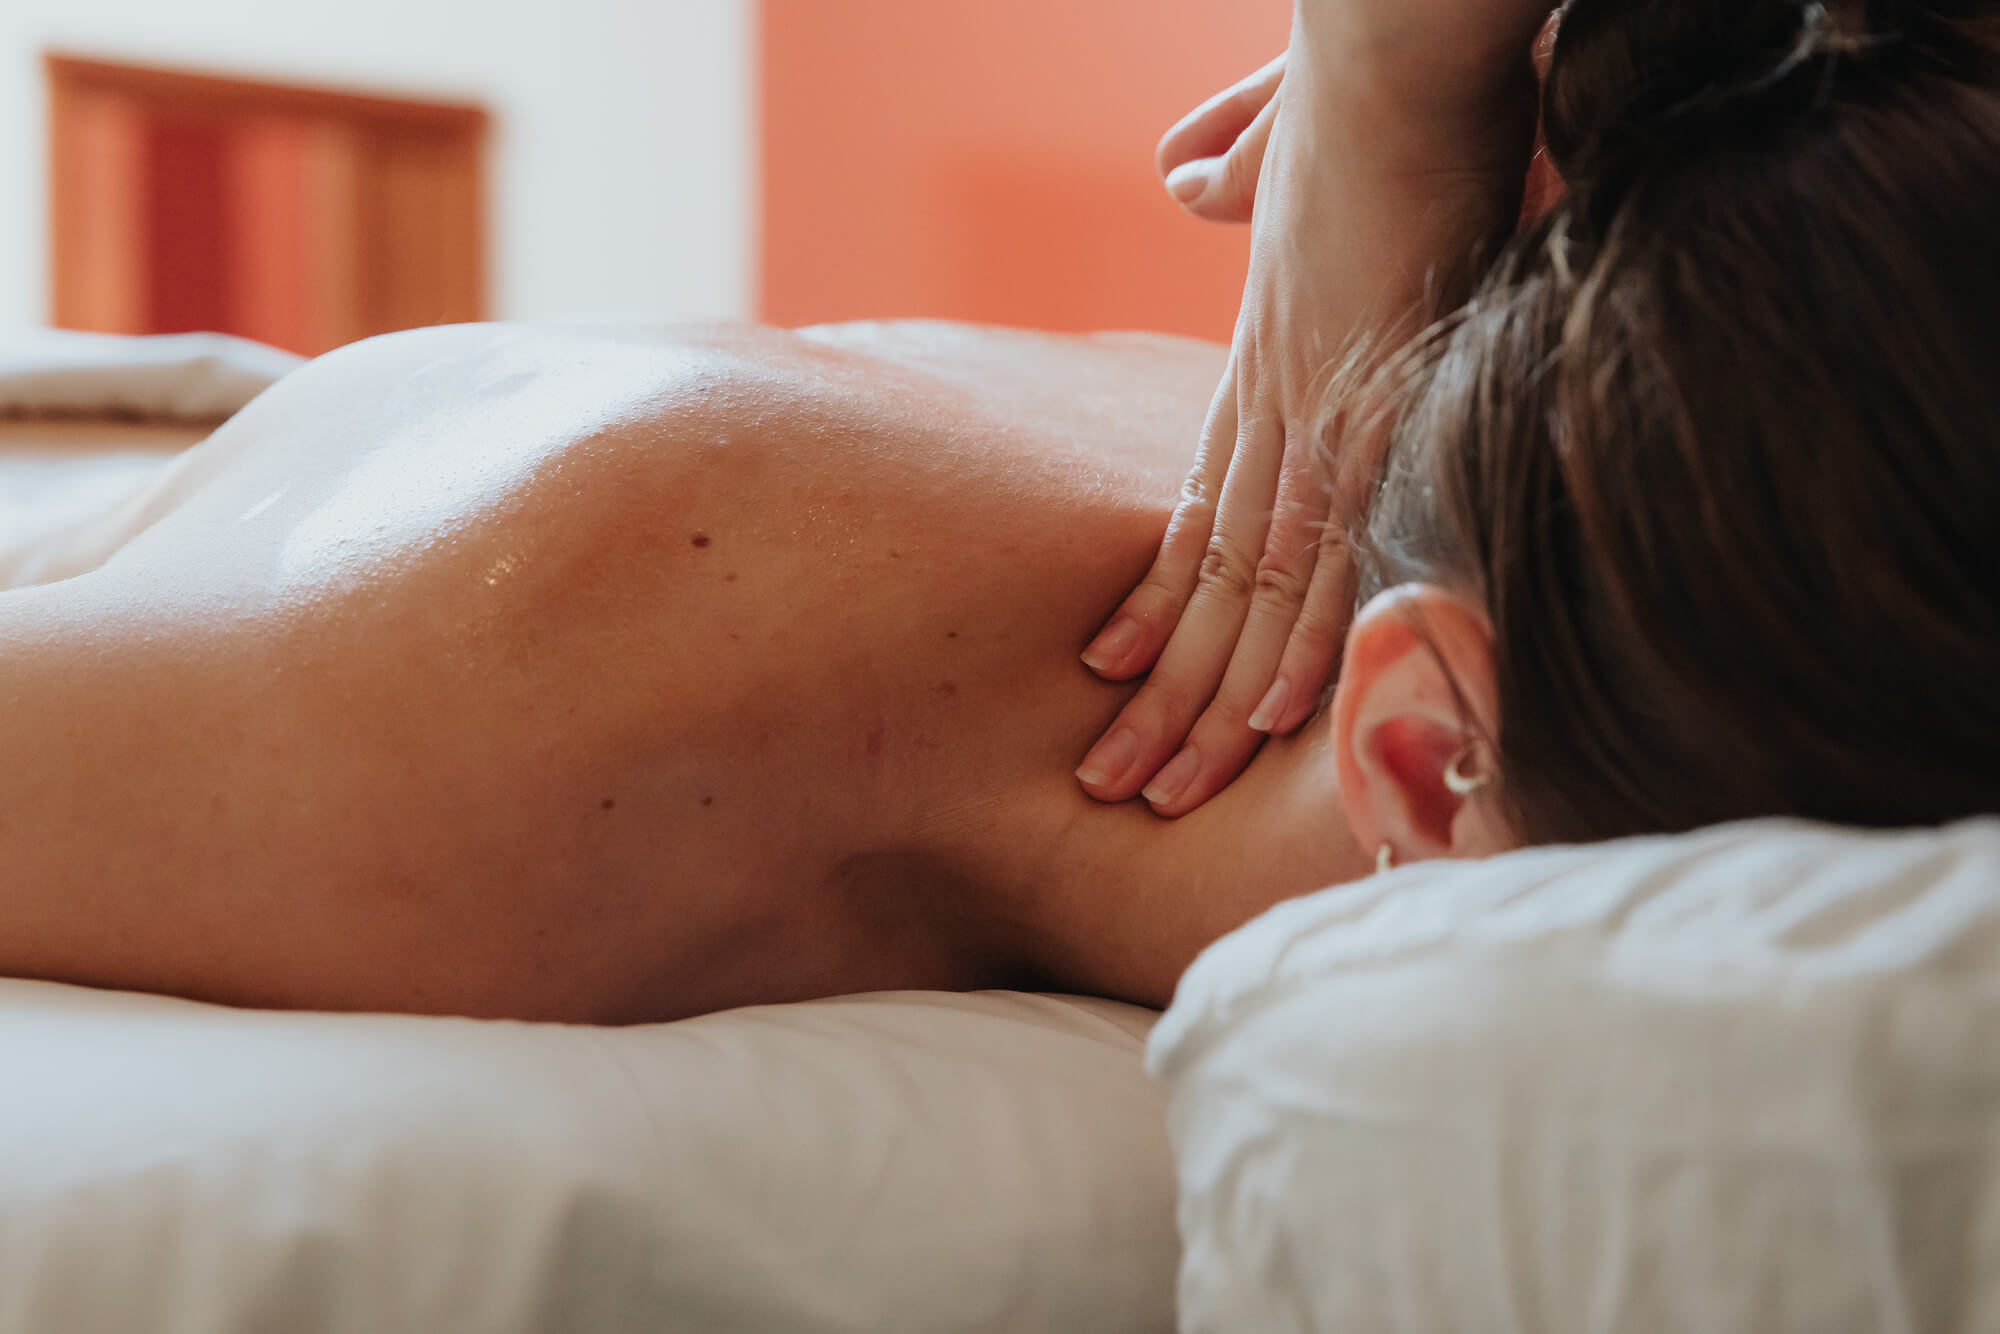 A woman receiving a neck massage